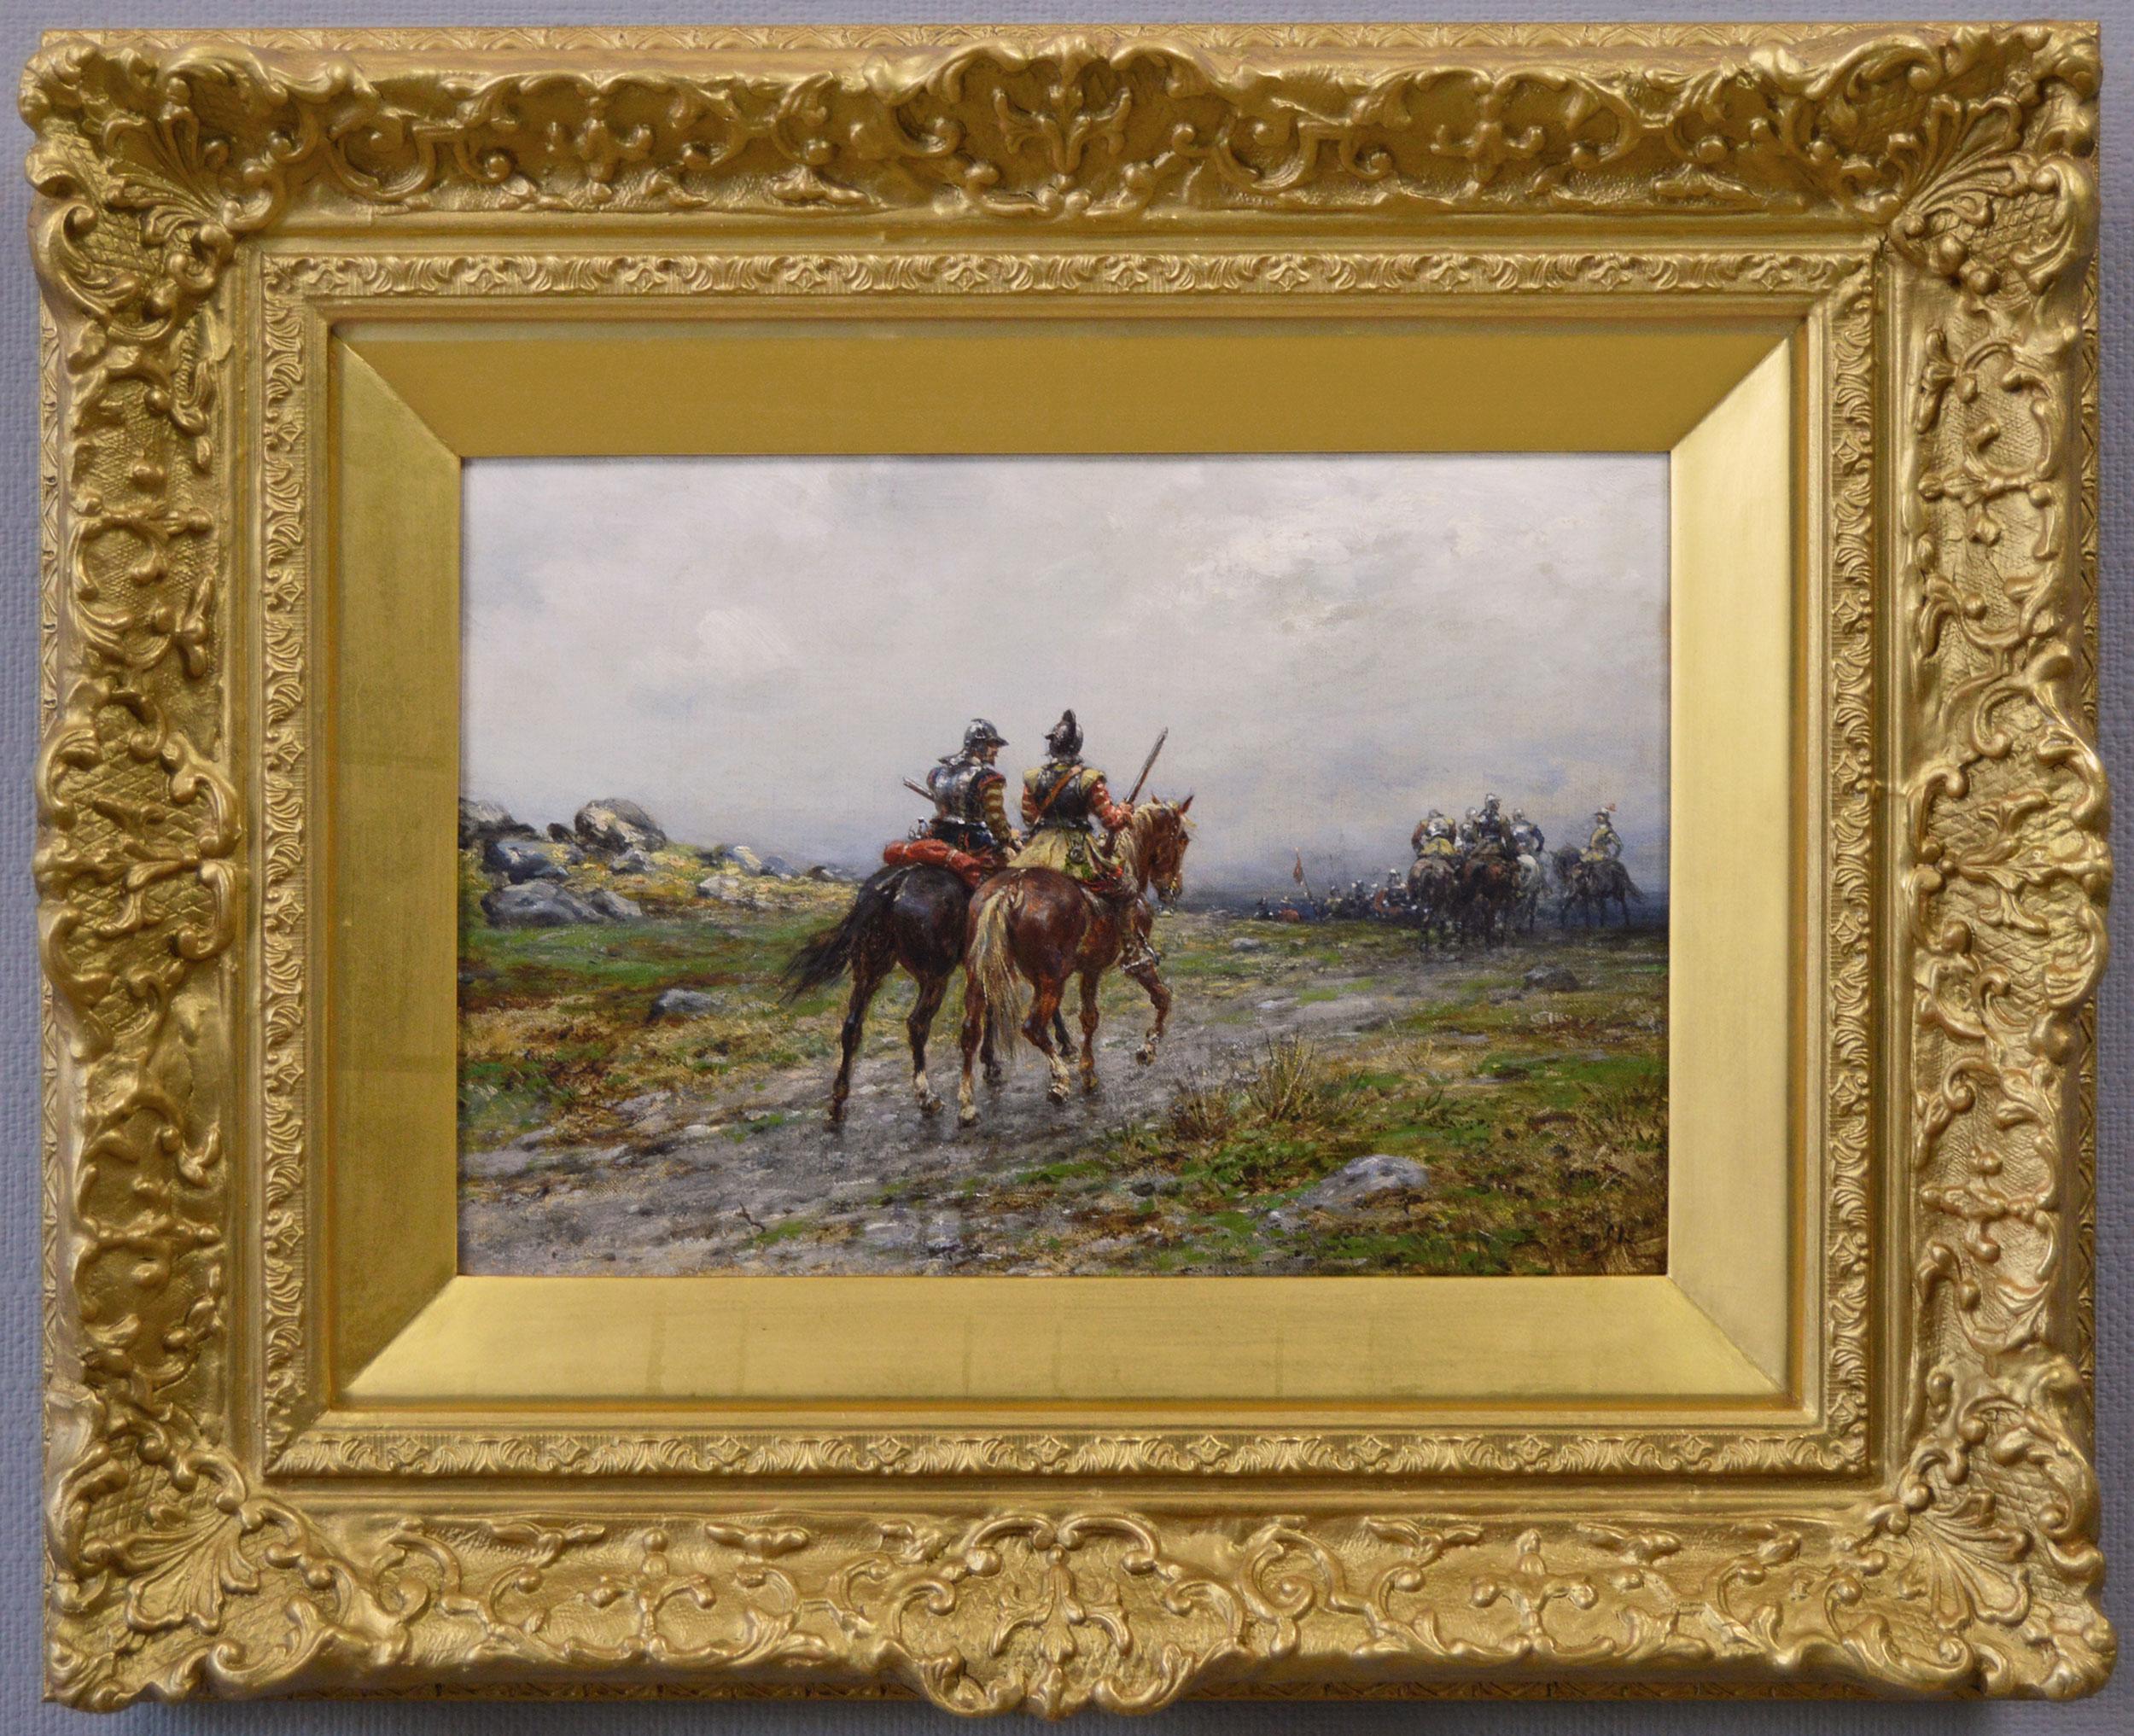 Peinture à l'huile de genre historique du 19e siècle représentant des soldats anglais de la guerre civile